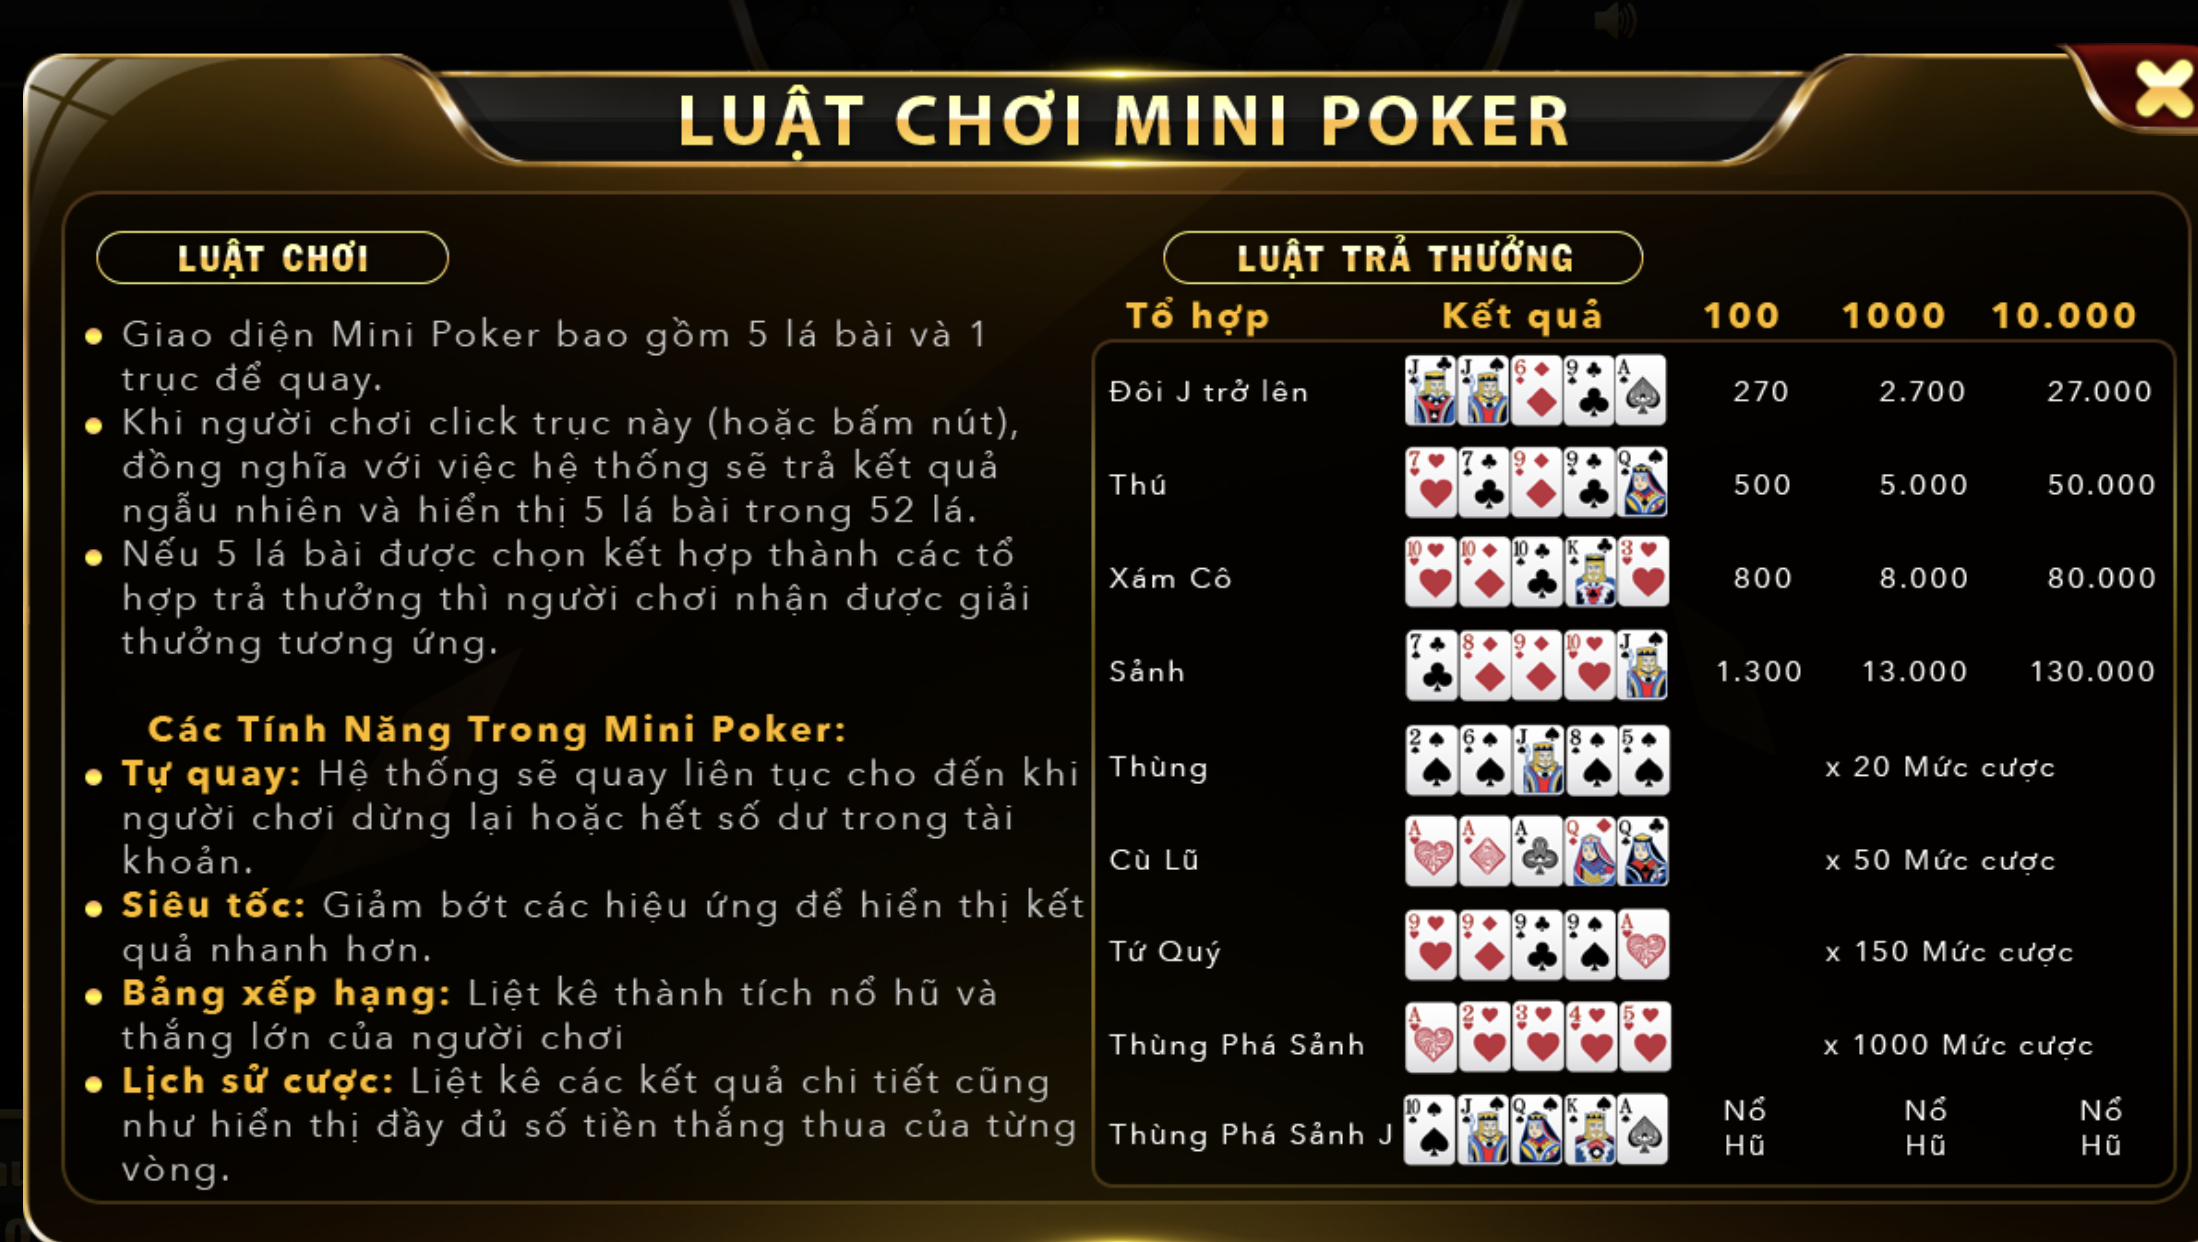 Hiểu rõ luật chơi của game Mini Poker